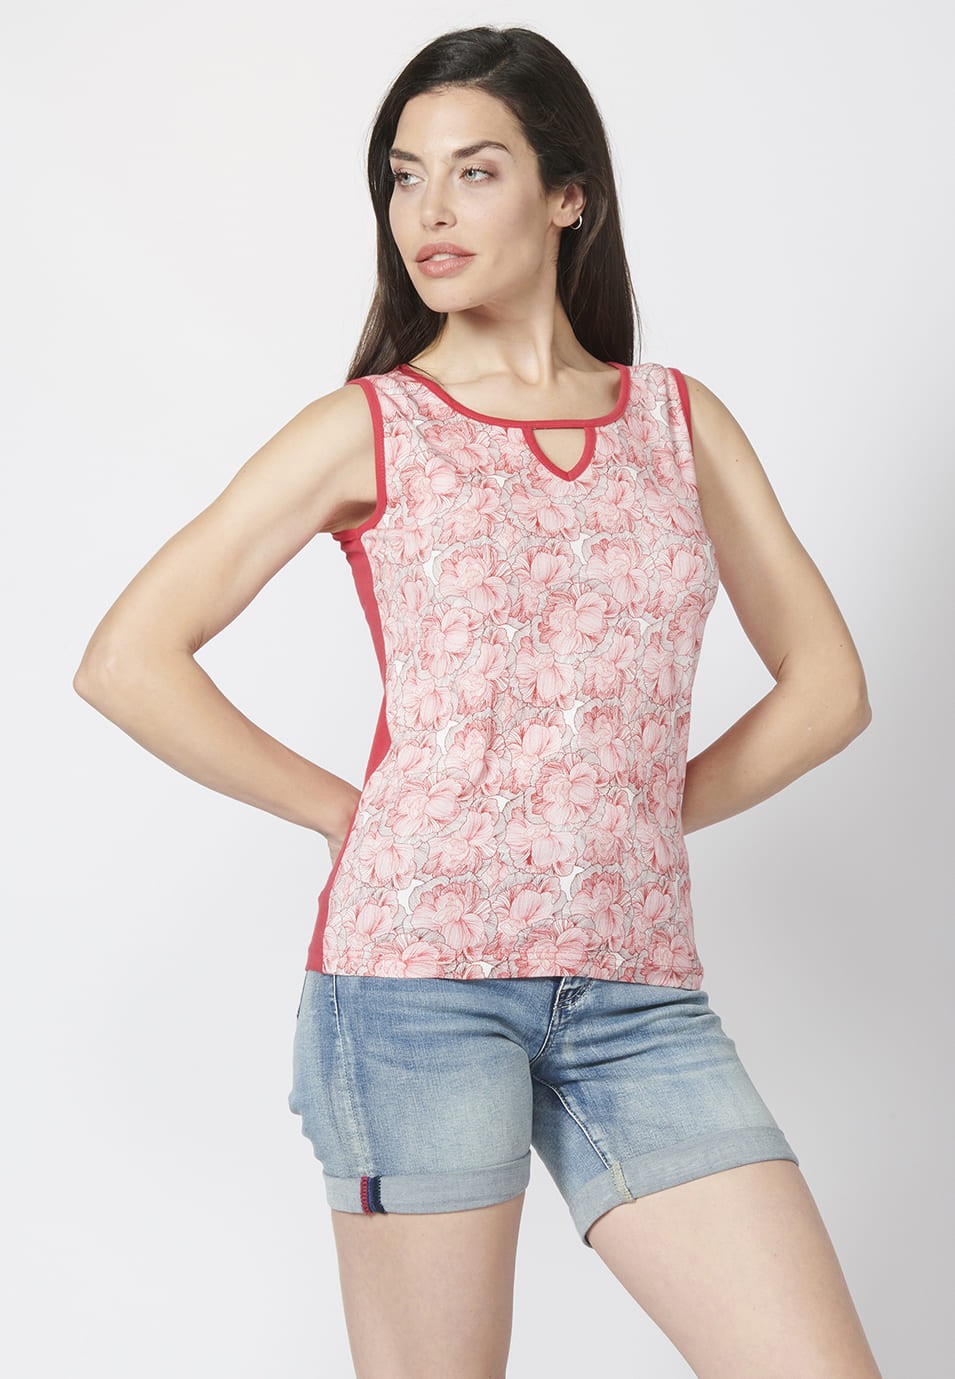 Camiseta Top tirantes de Algodón con escote en Pico y Estampado Floral para Mujer